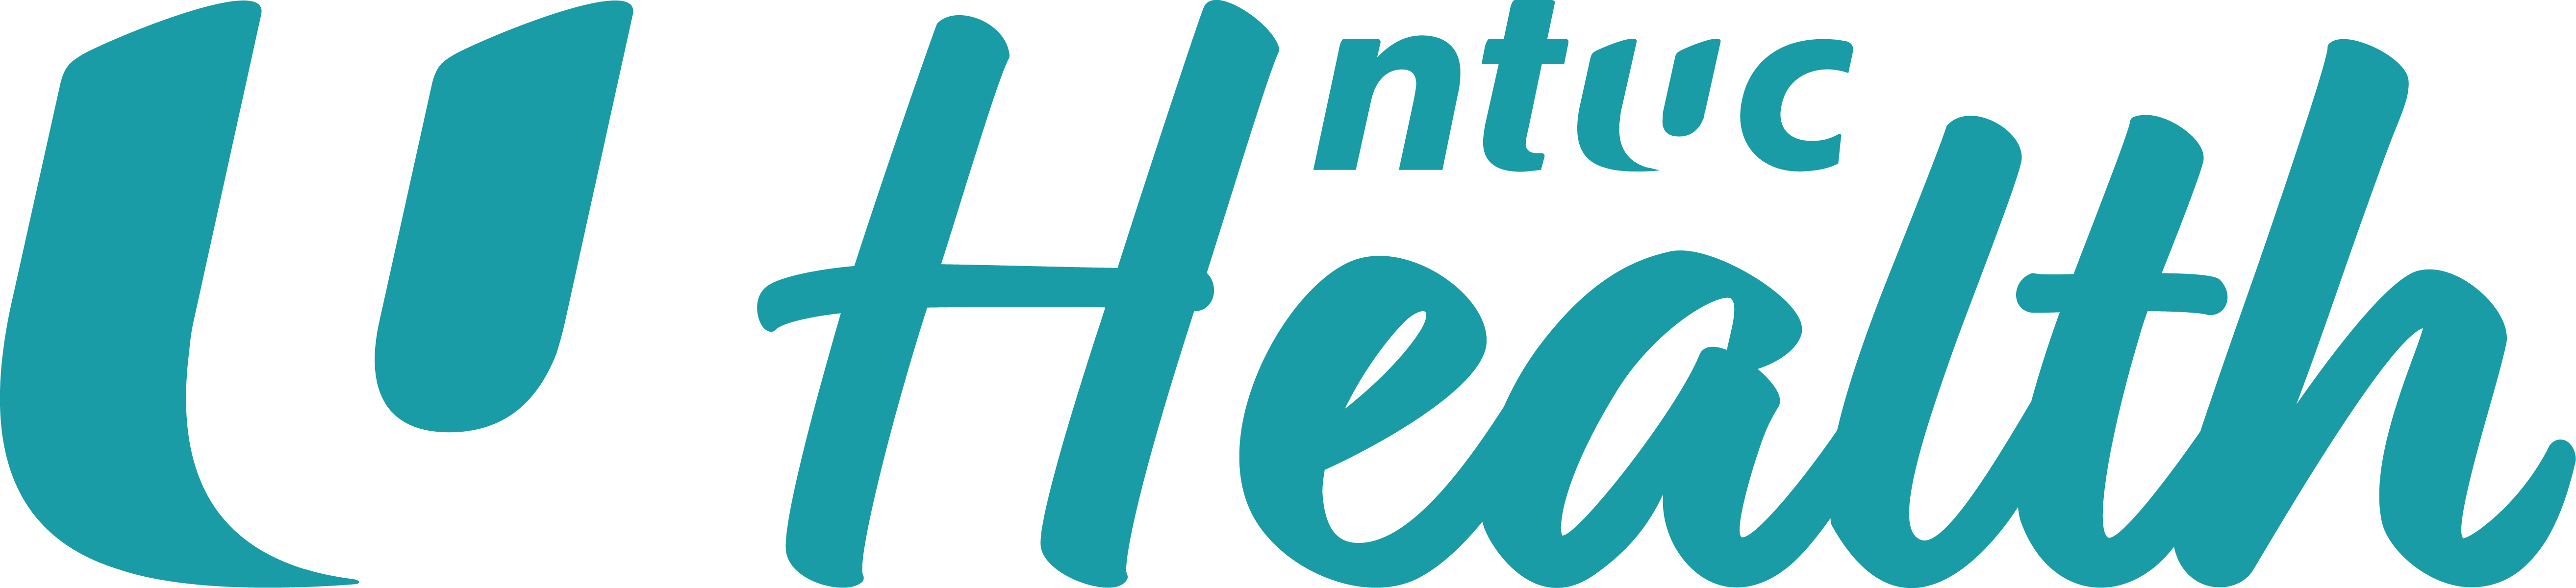 NTUC Health 2019 Logo_FullColour.png